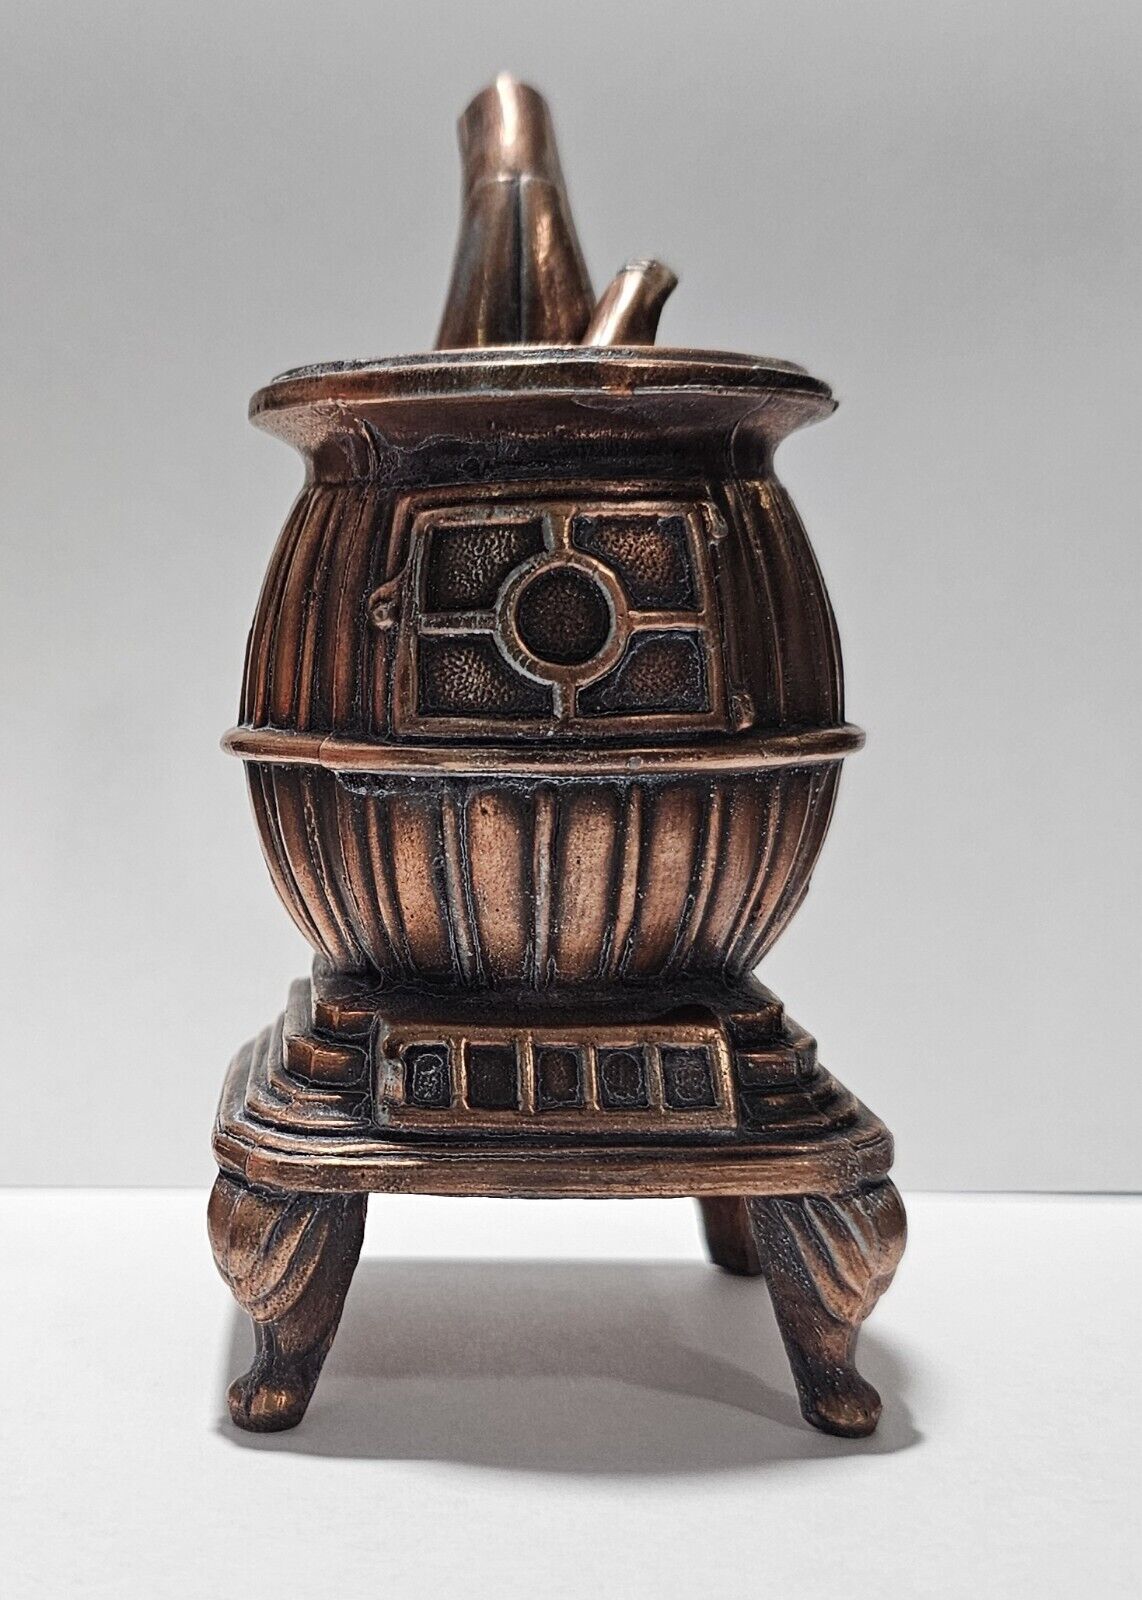 Antique Salesman Sample Pot Belly Stove Cast Iron Patent 6”